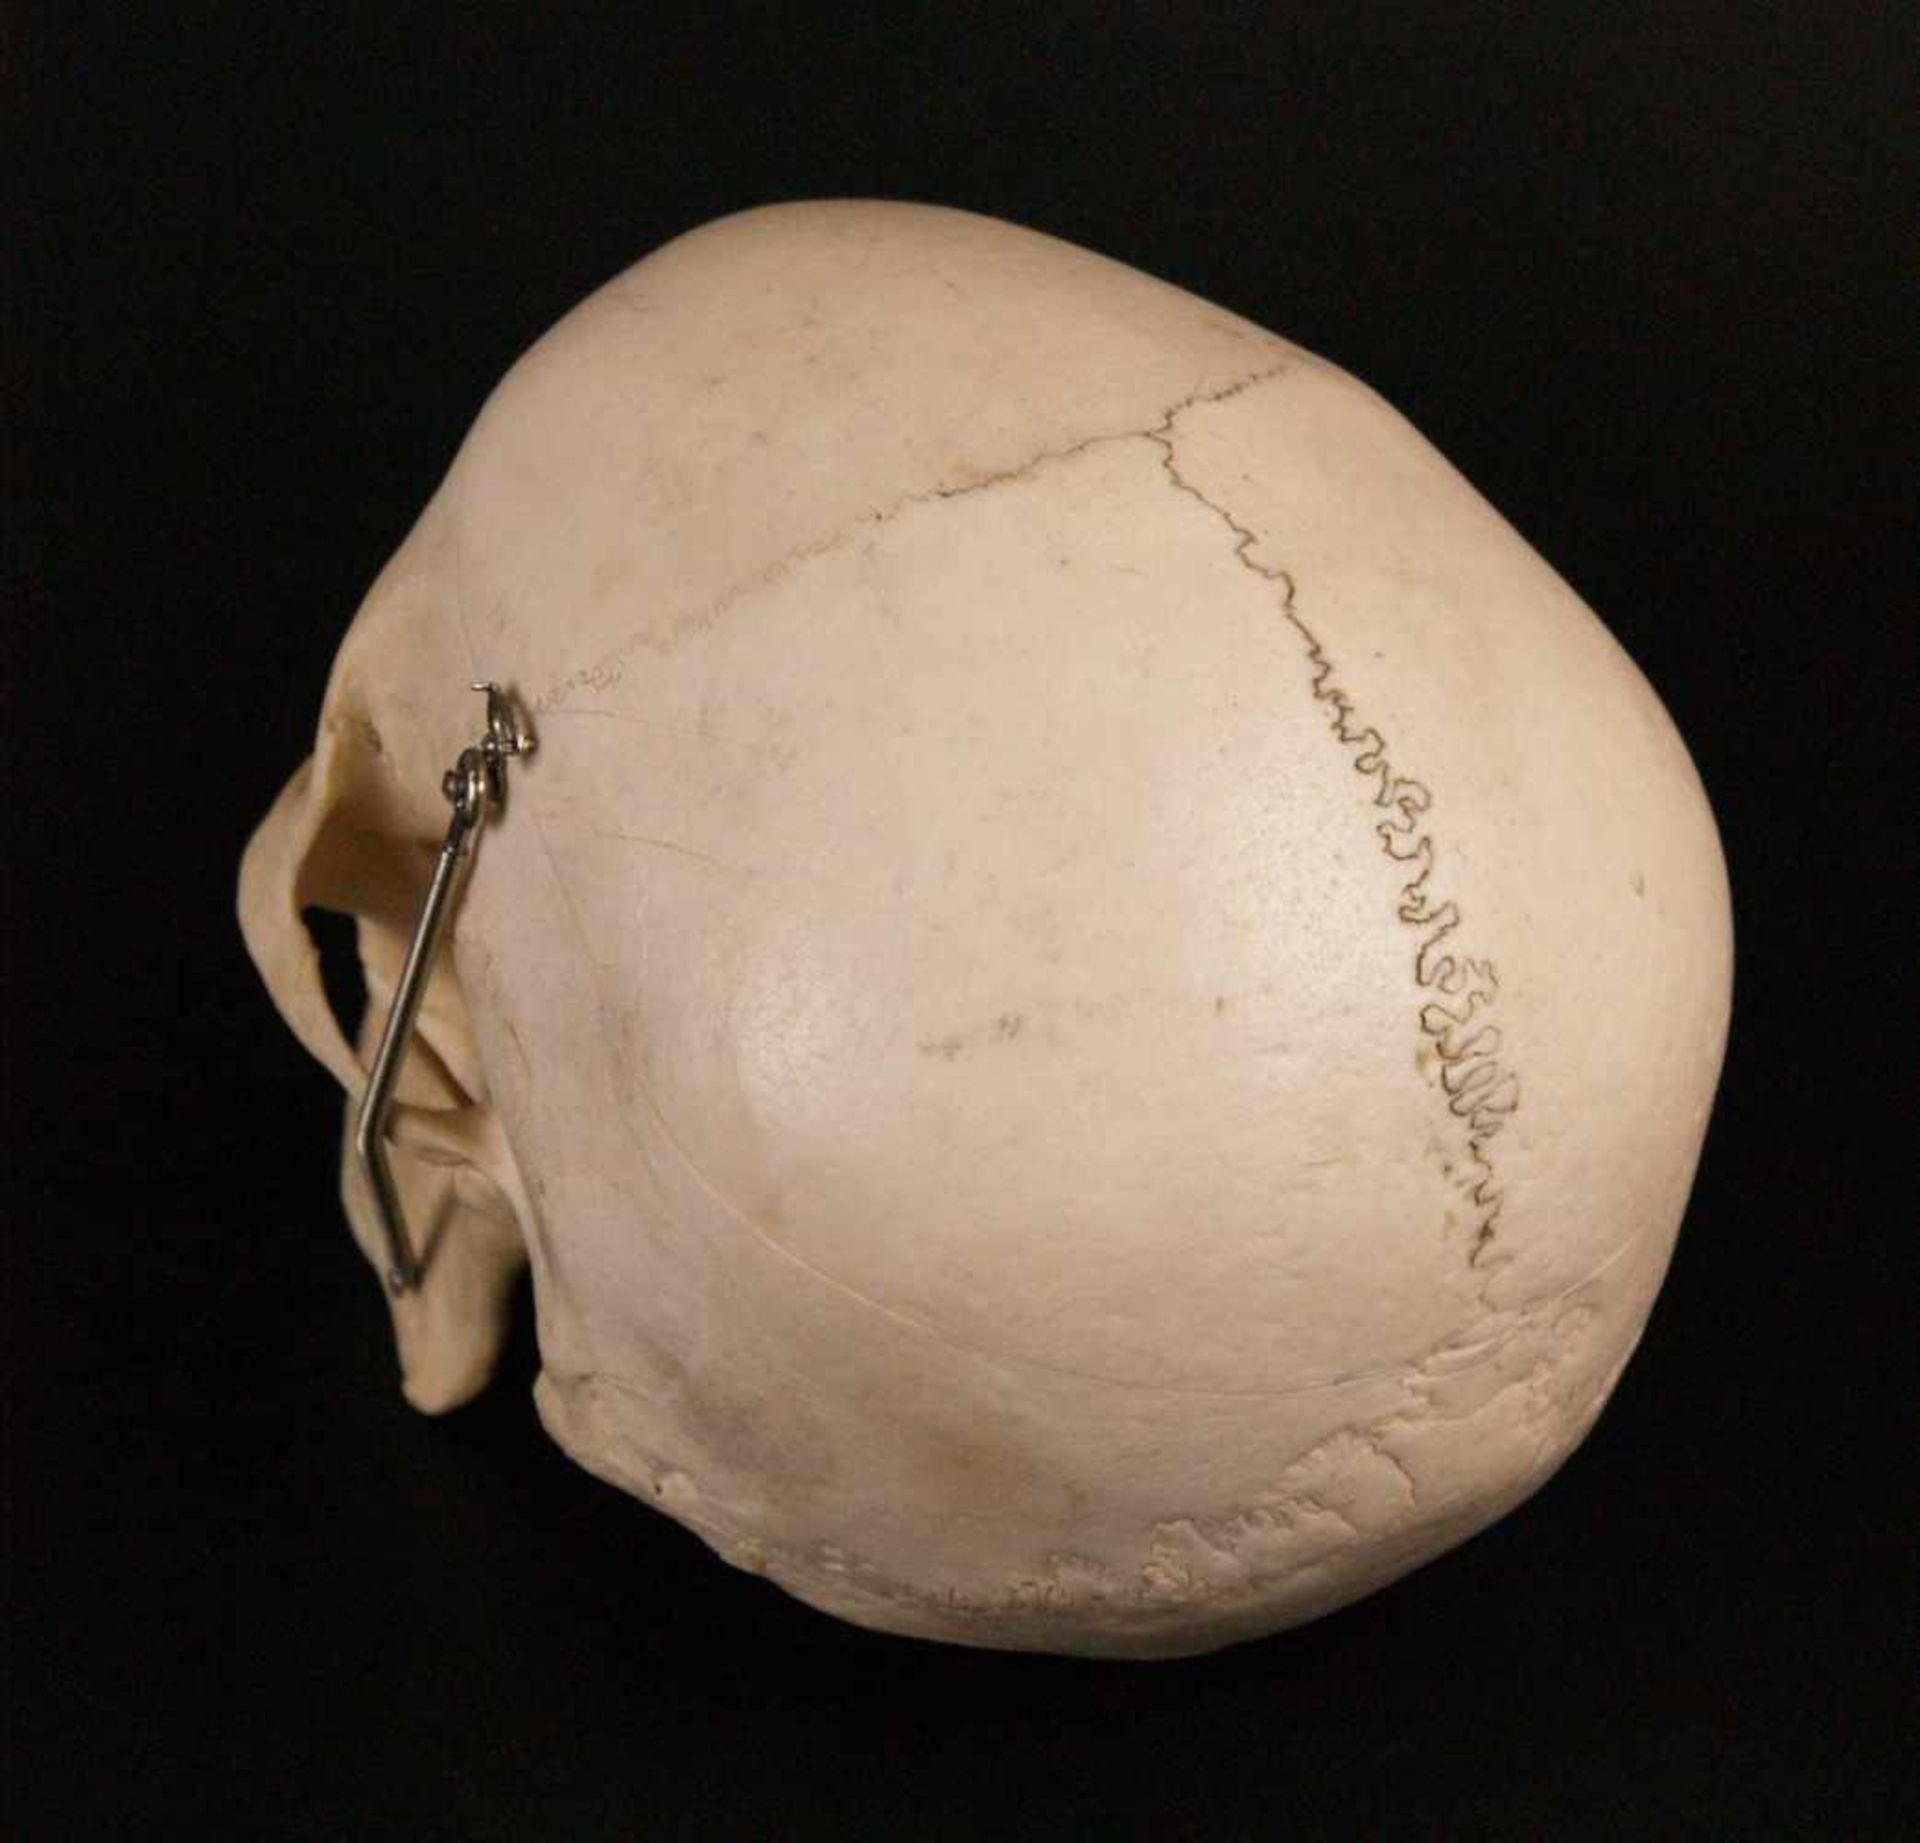 Mediziner-Schädel - anatomisch korrekte Replik eines menschlichen Schädels, Kalotte abnehmbar, - Bild 3 aus 4